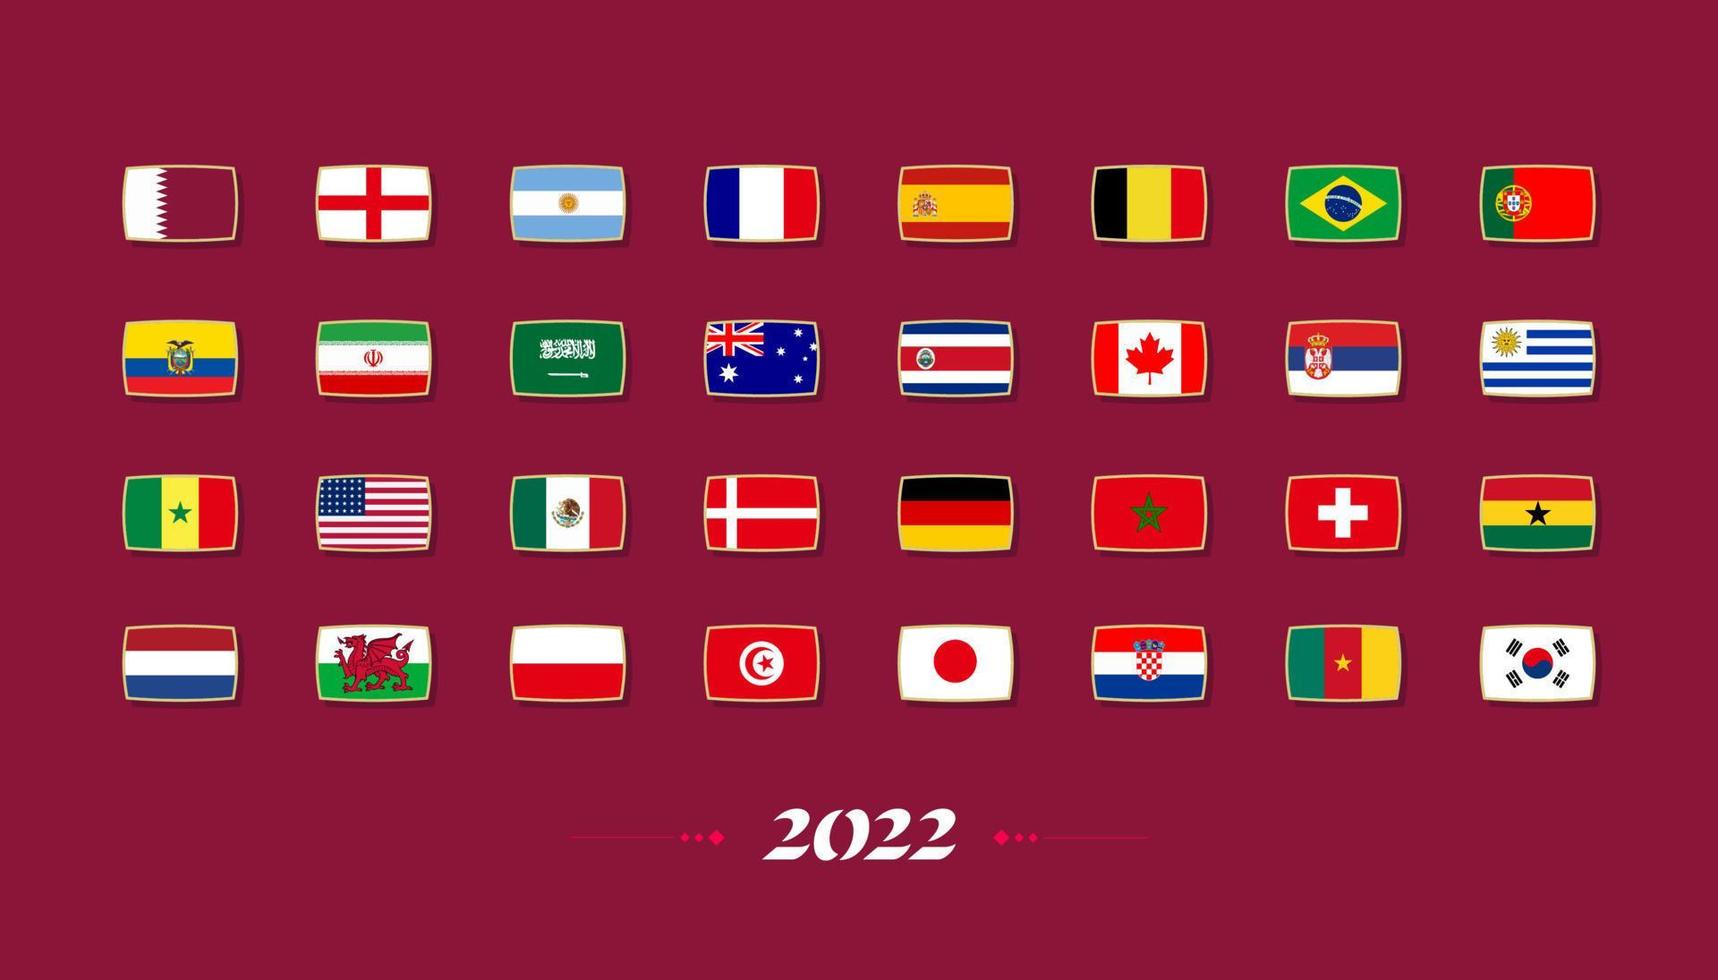 banderas de los países que participan en el torneo internacional de fútbol en qatar. vector